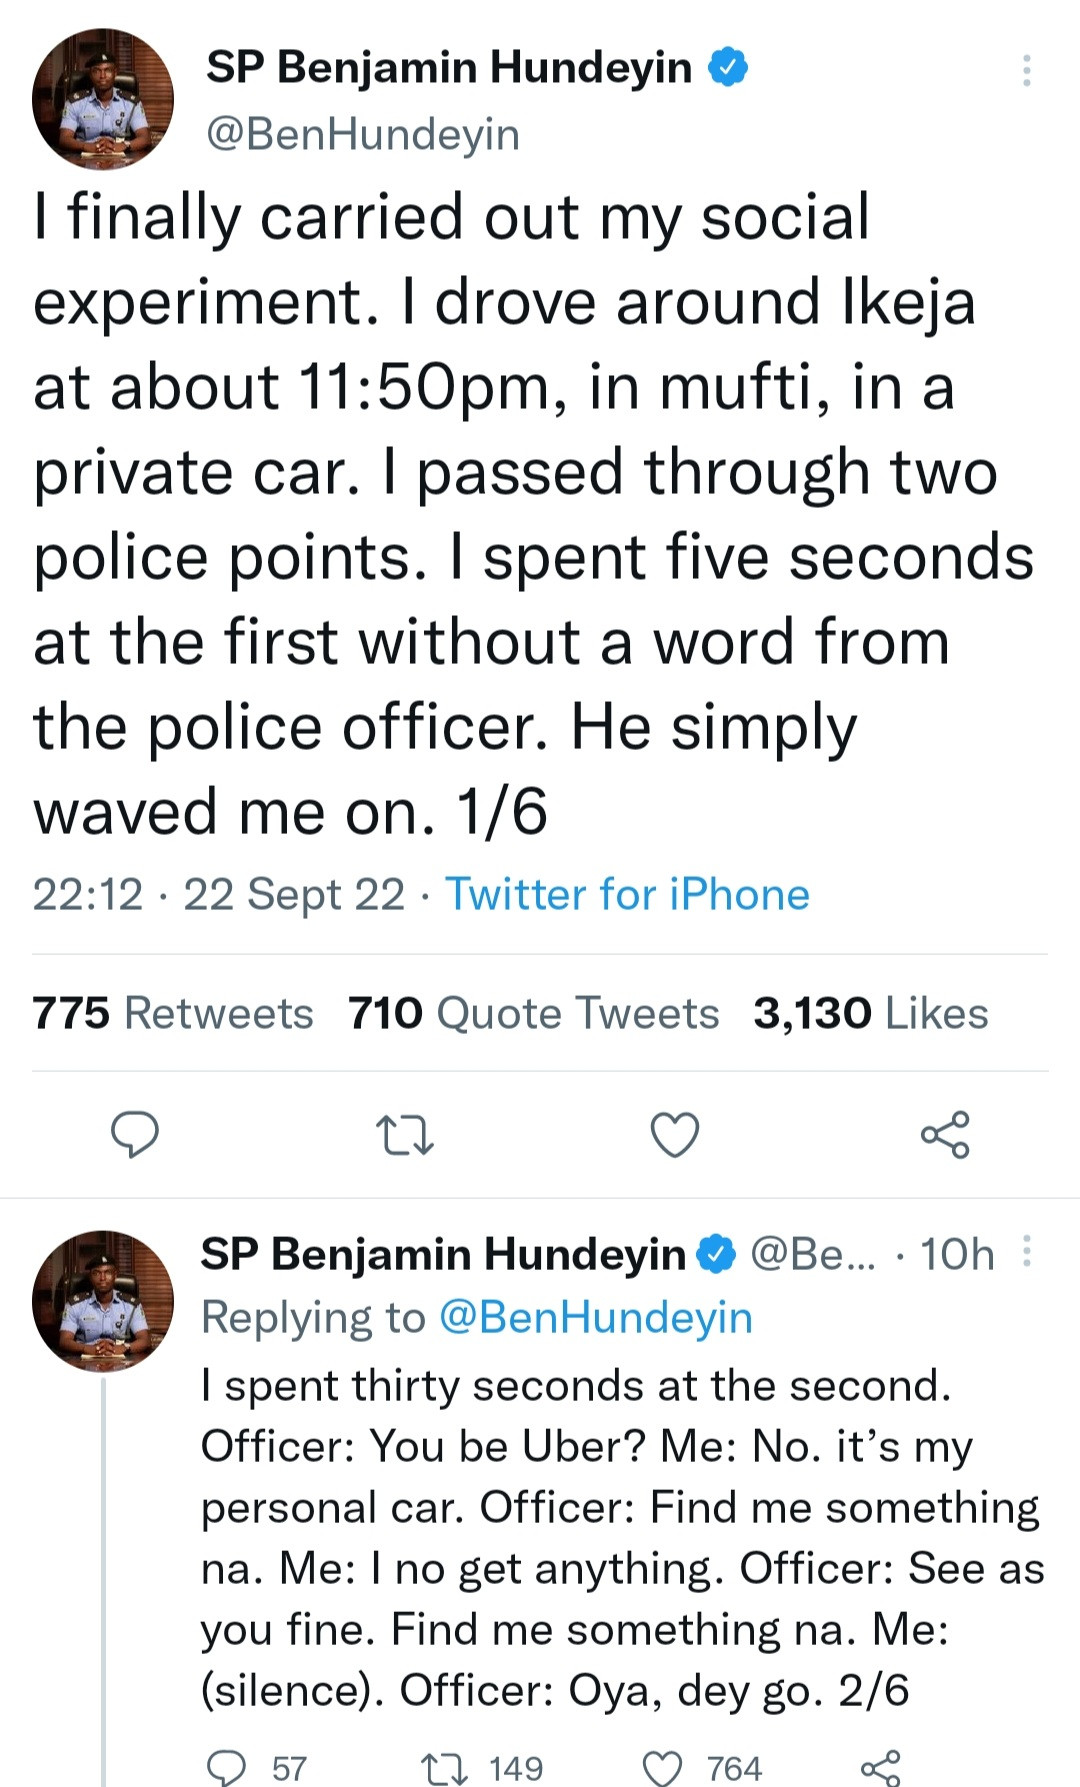 SP Benjamin Hundeyin tweets